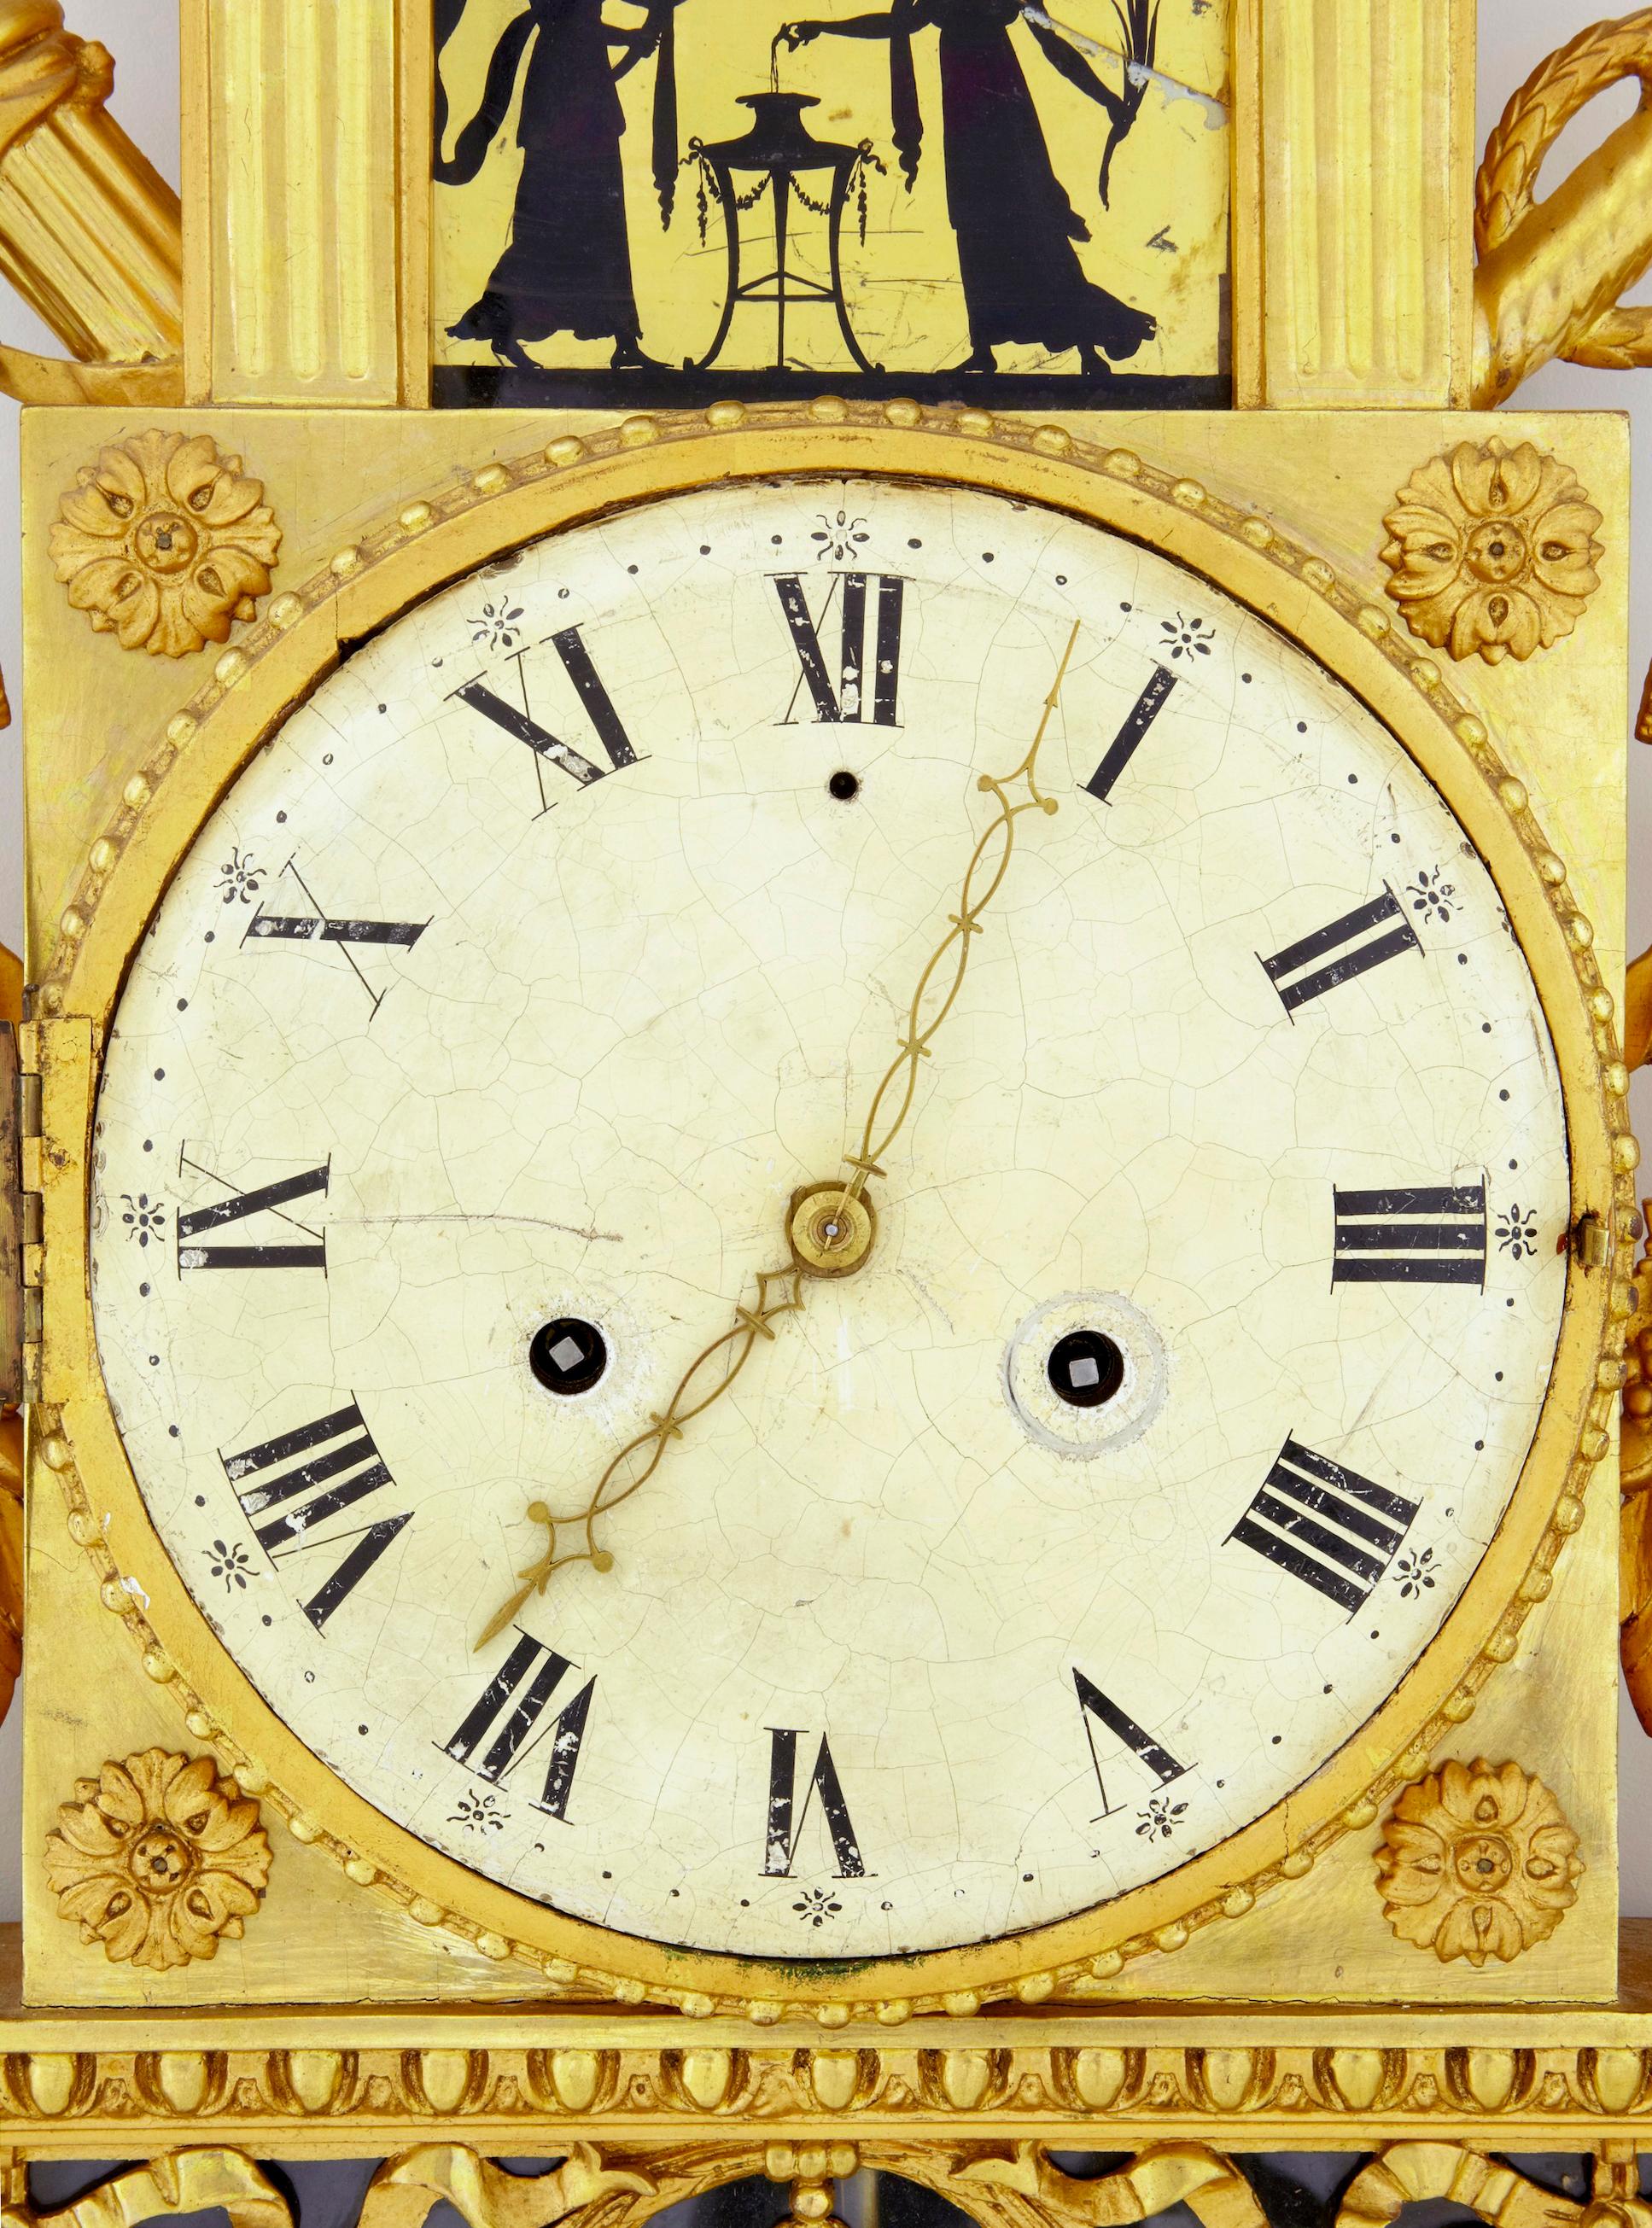 Schwedische vergoldete und verschnörkelte Wanduhr aus dem 19. Jahrhundert, um 1840.

Hochwertige schwedische Wanduhr aus der Kaiserzeit um 1840. Wunderschön geschnitzt, mit Tauben bekrönt. 2 Silhouette églomisé Glasscheiben (1 davon hat einen